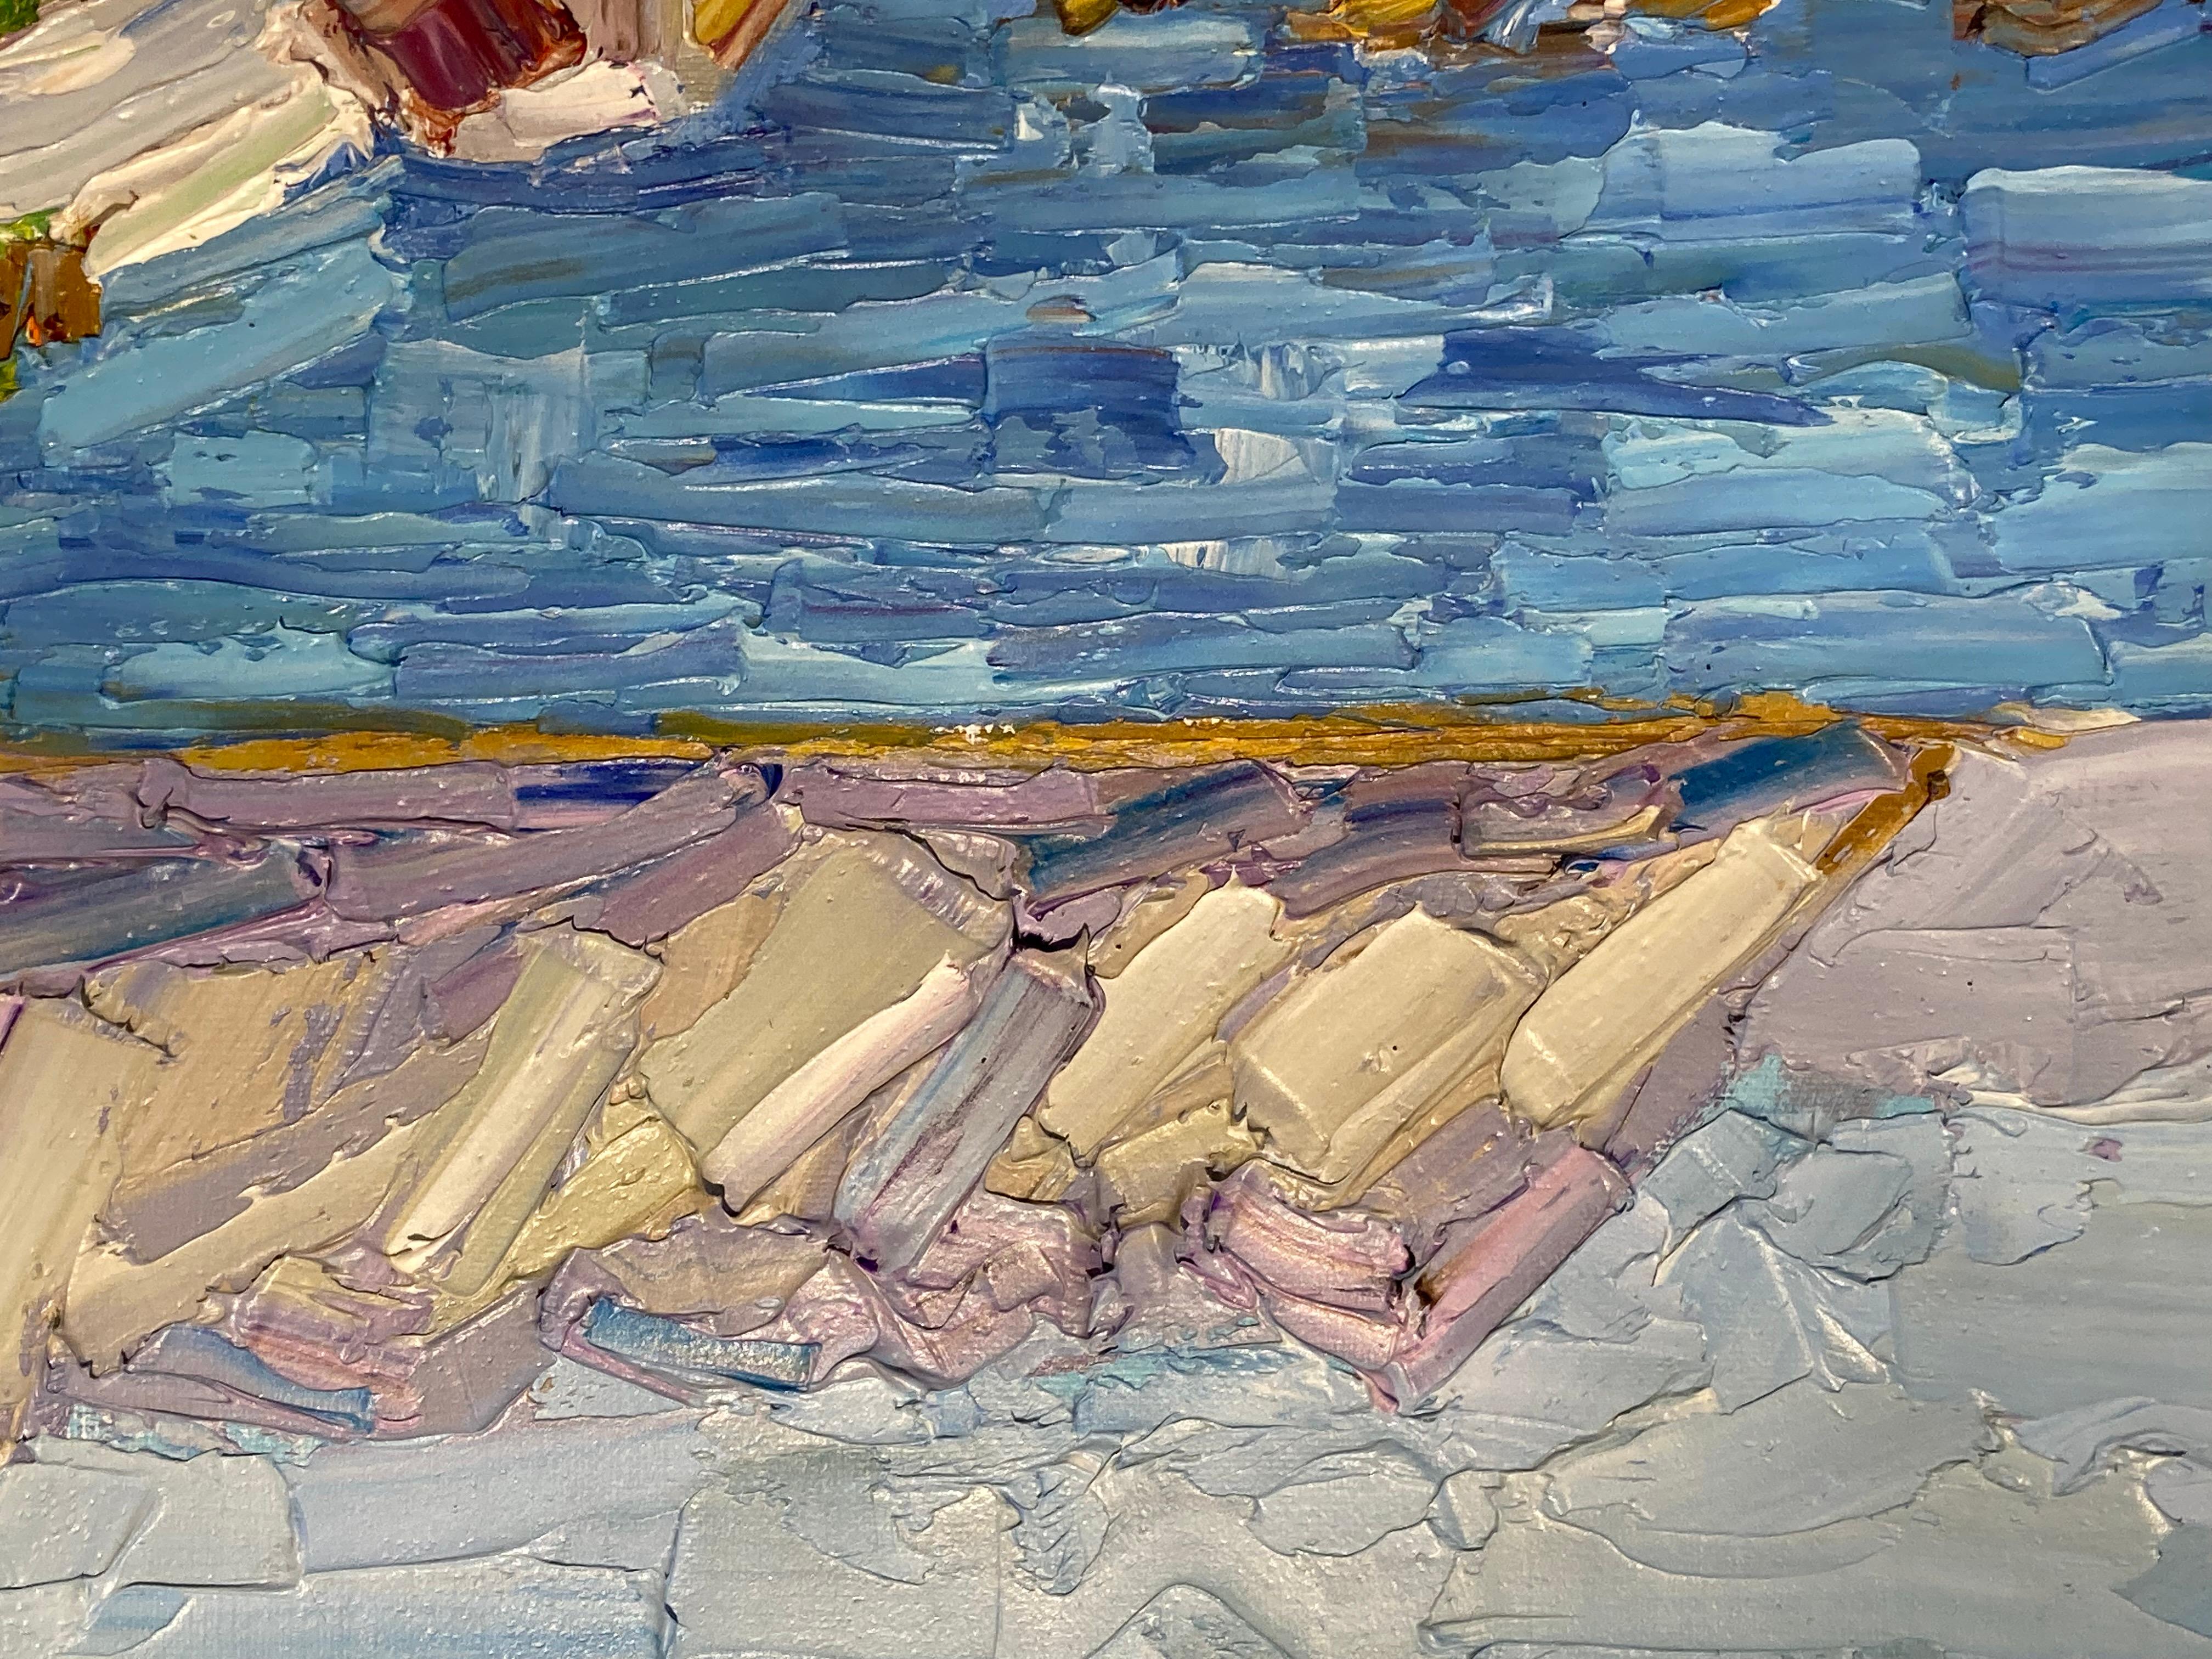 Cette huile sur toile 16 x 20 de l'artiste James Cobb représente une vue côtière rocheuse avec une maison blanche perchée au milieu et une chaîne de montagnes grises s'étendant à l'arrière-plan. Cobb met en évidence les riches nuances du bleu de